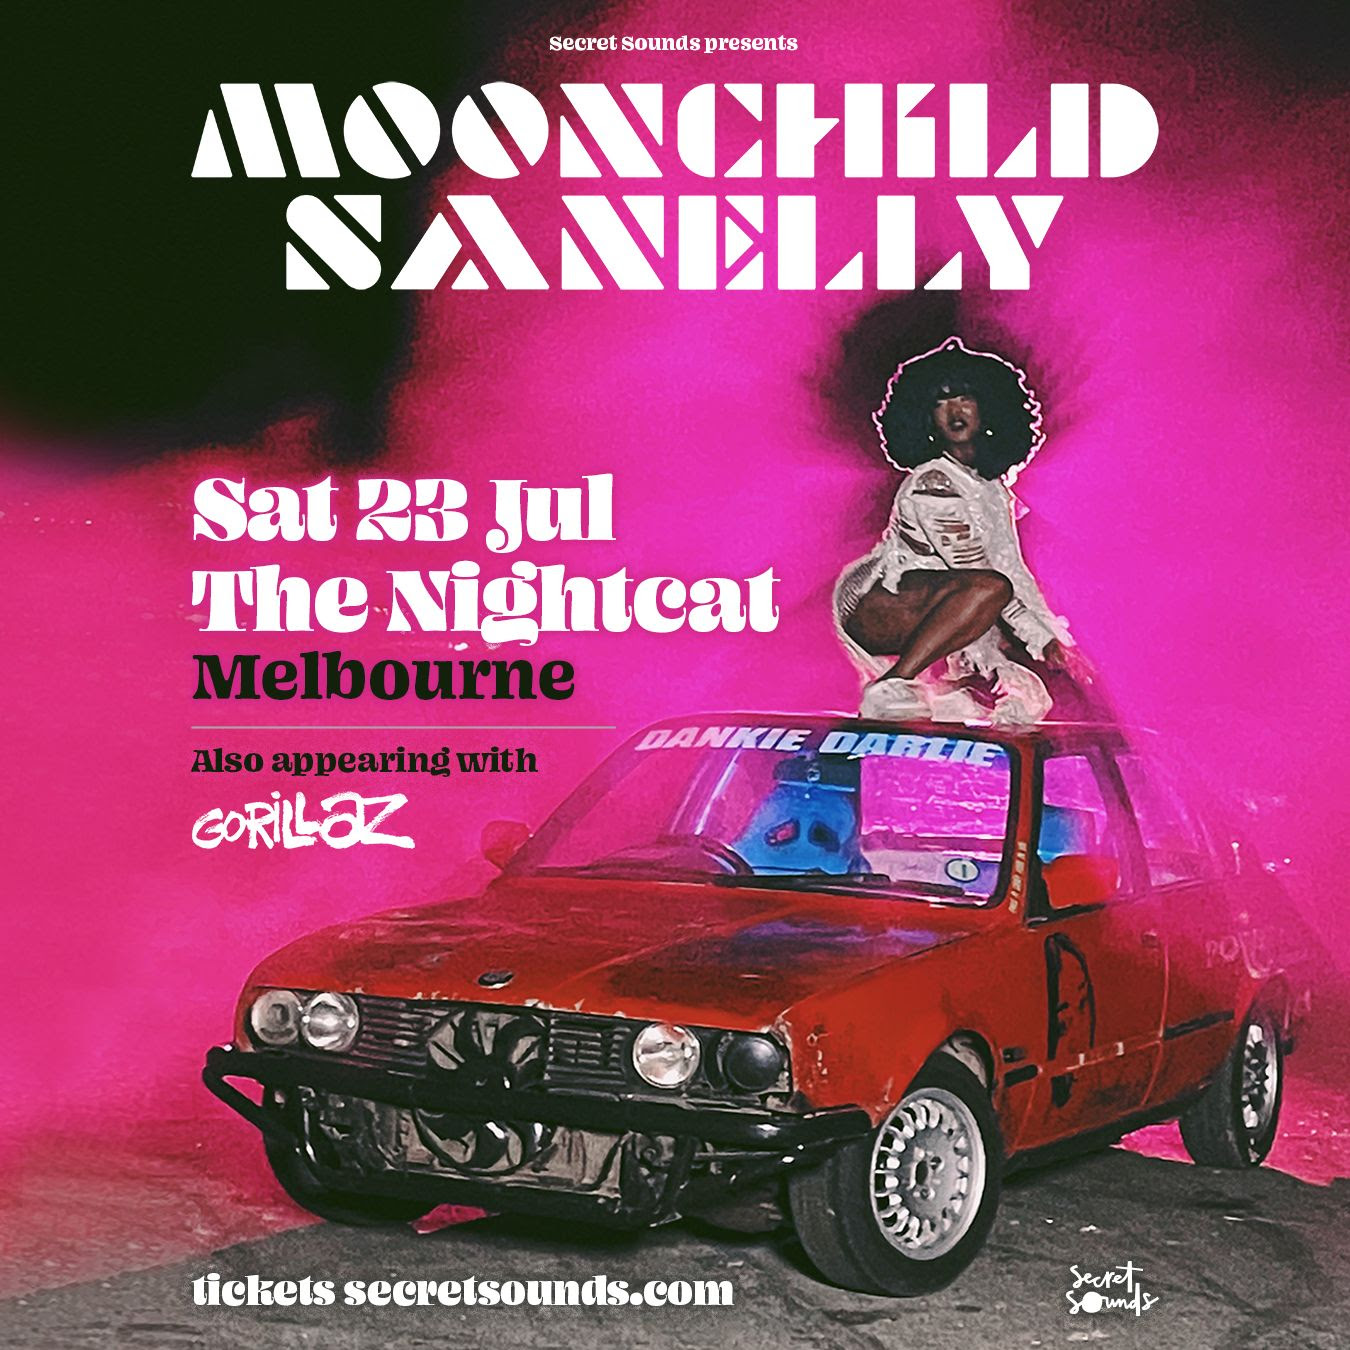 Moonchild Sanelly